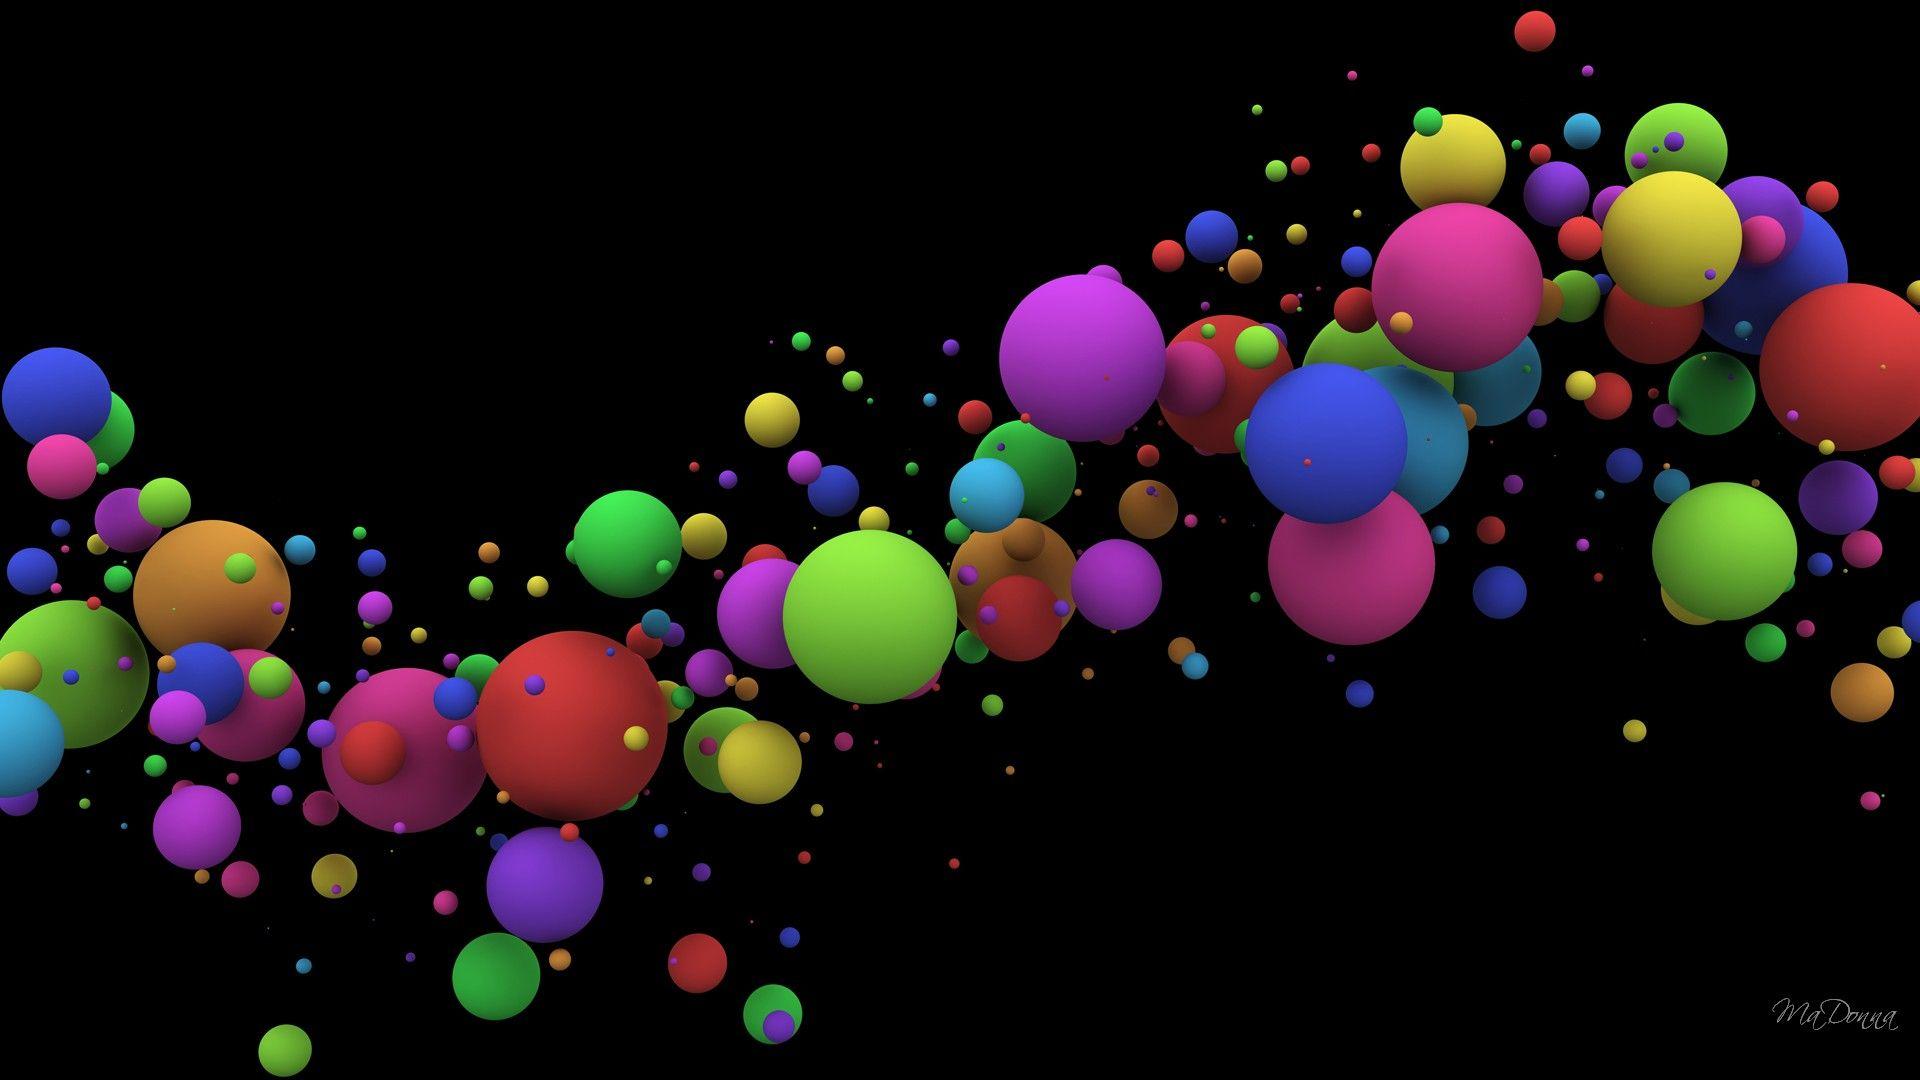 Splash colors wallpaper abstract color desktop cognitive